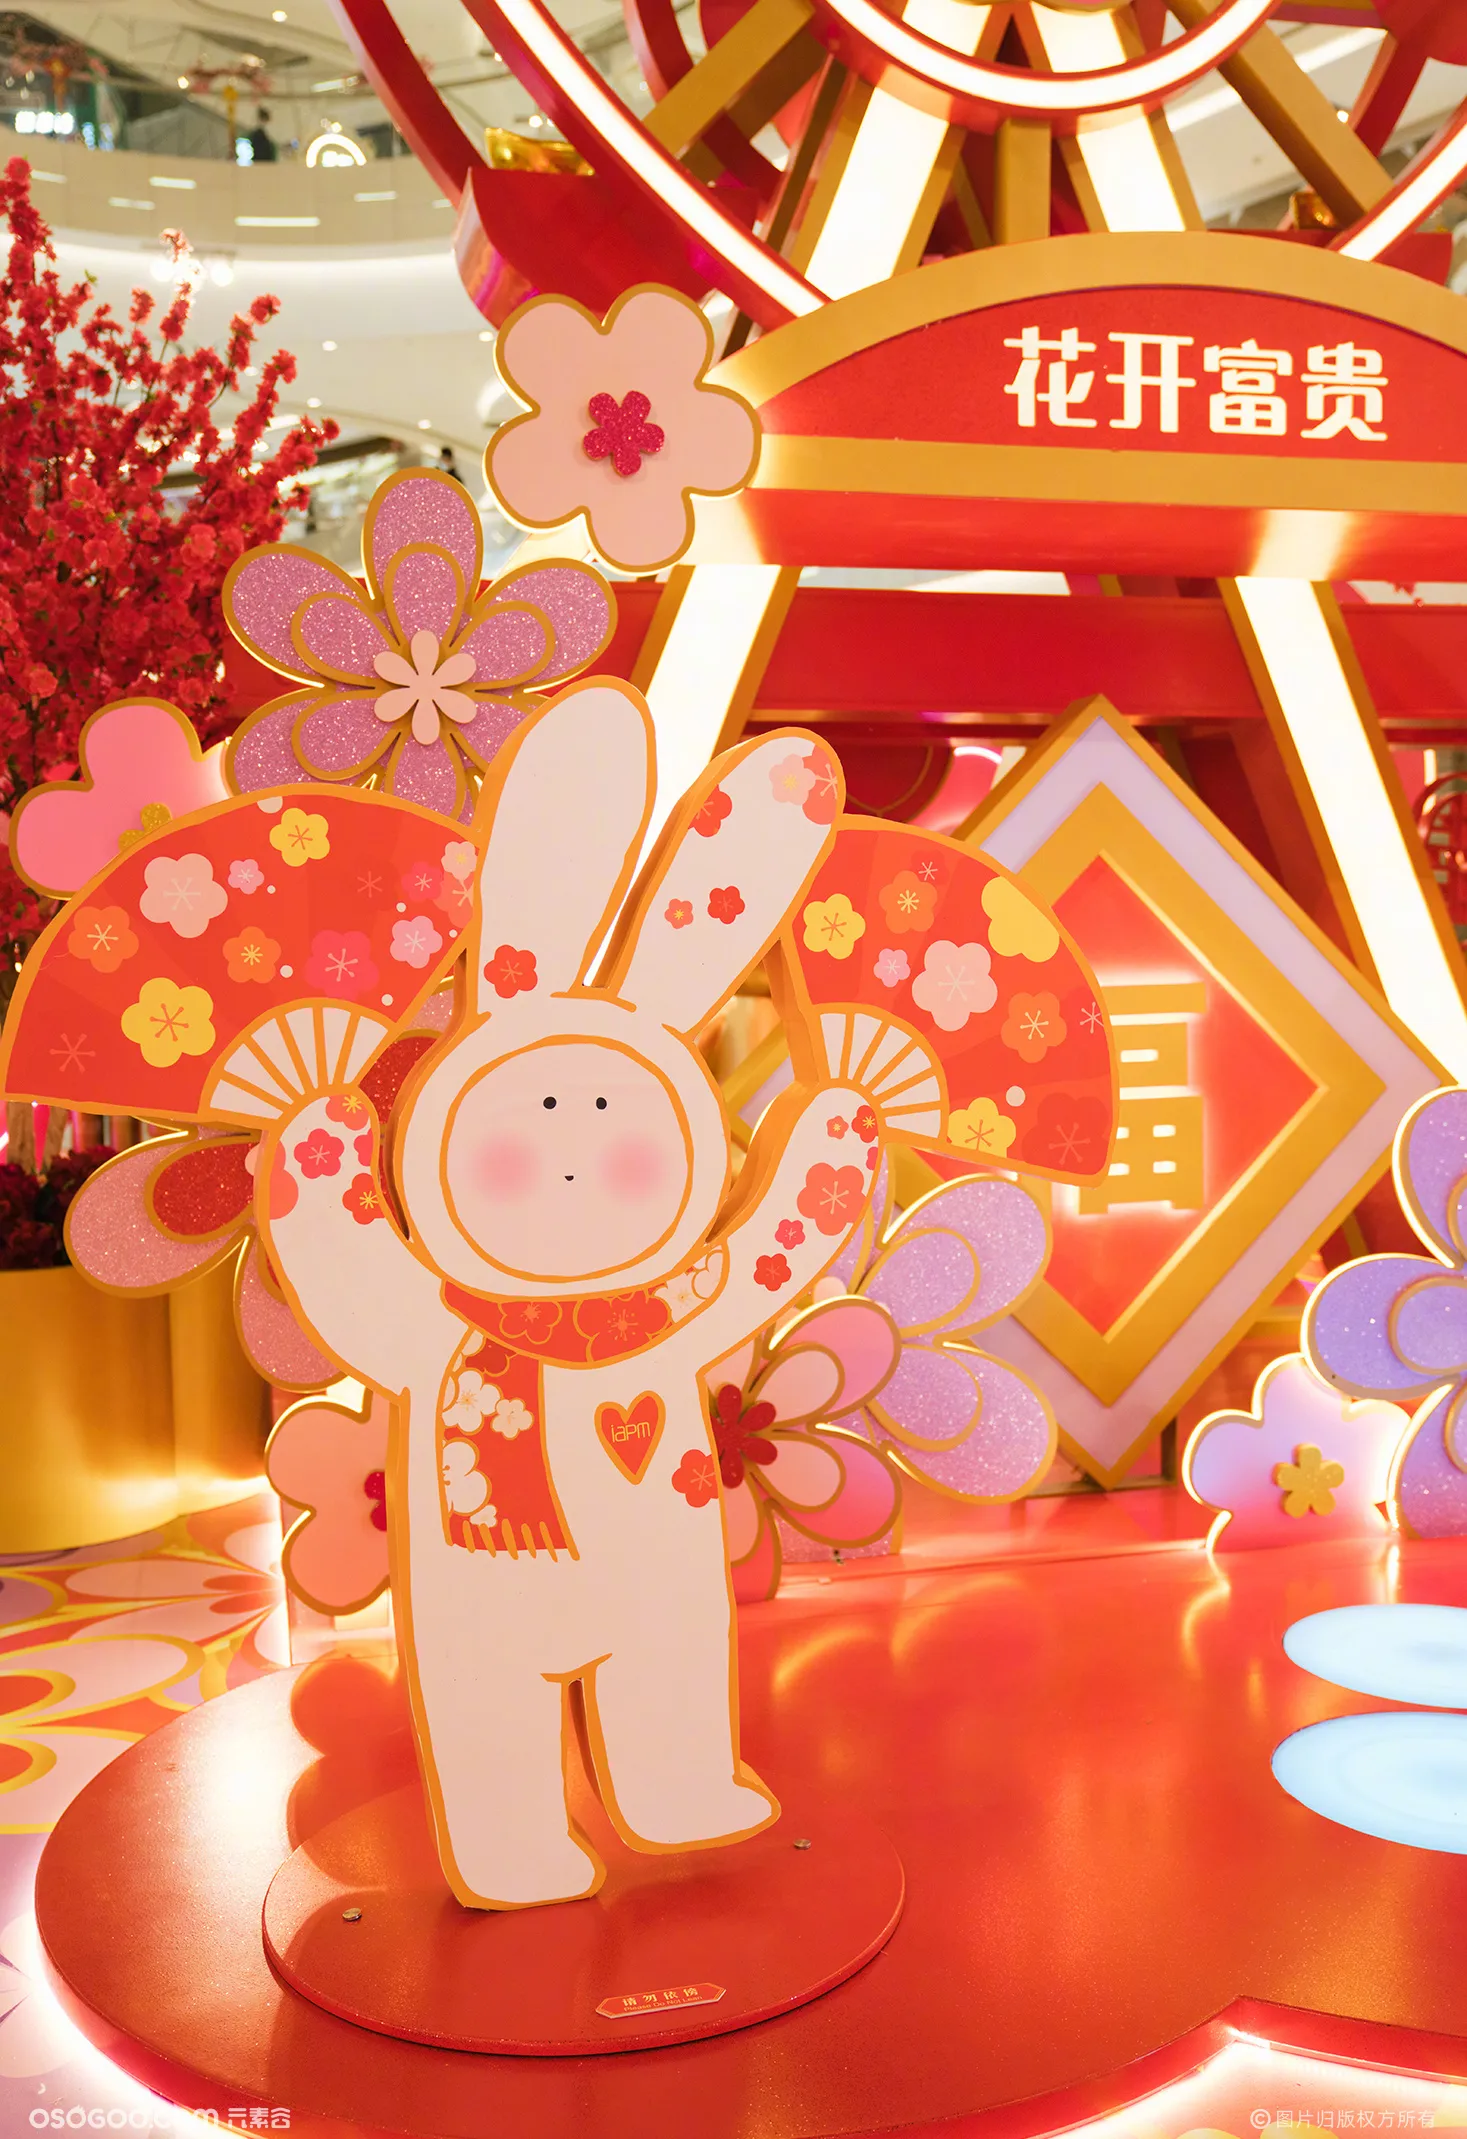 上海iapm「爱在此刻」不二兔新春主题展